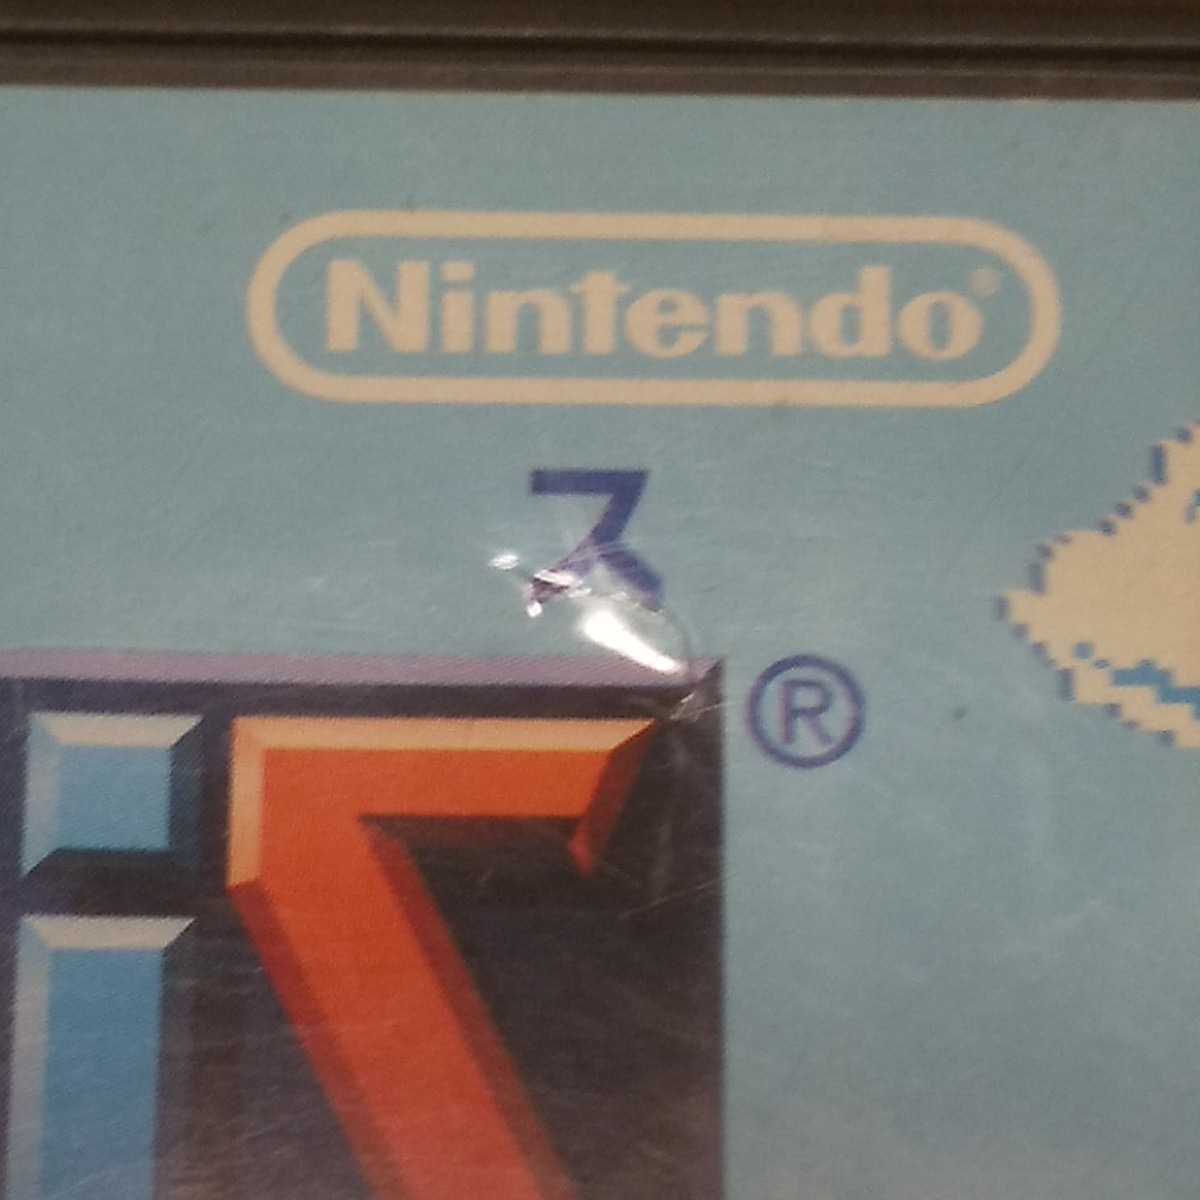 Nintendo DS テトリスDS 【管理】2207112